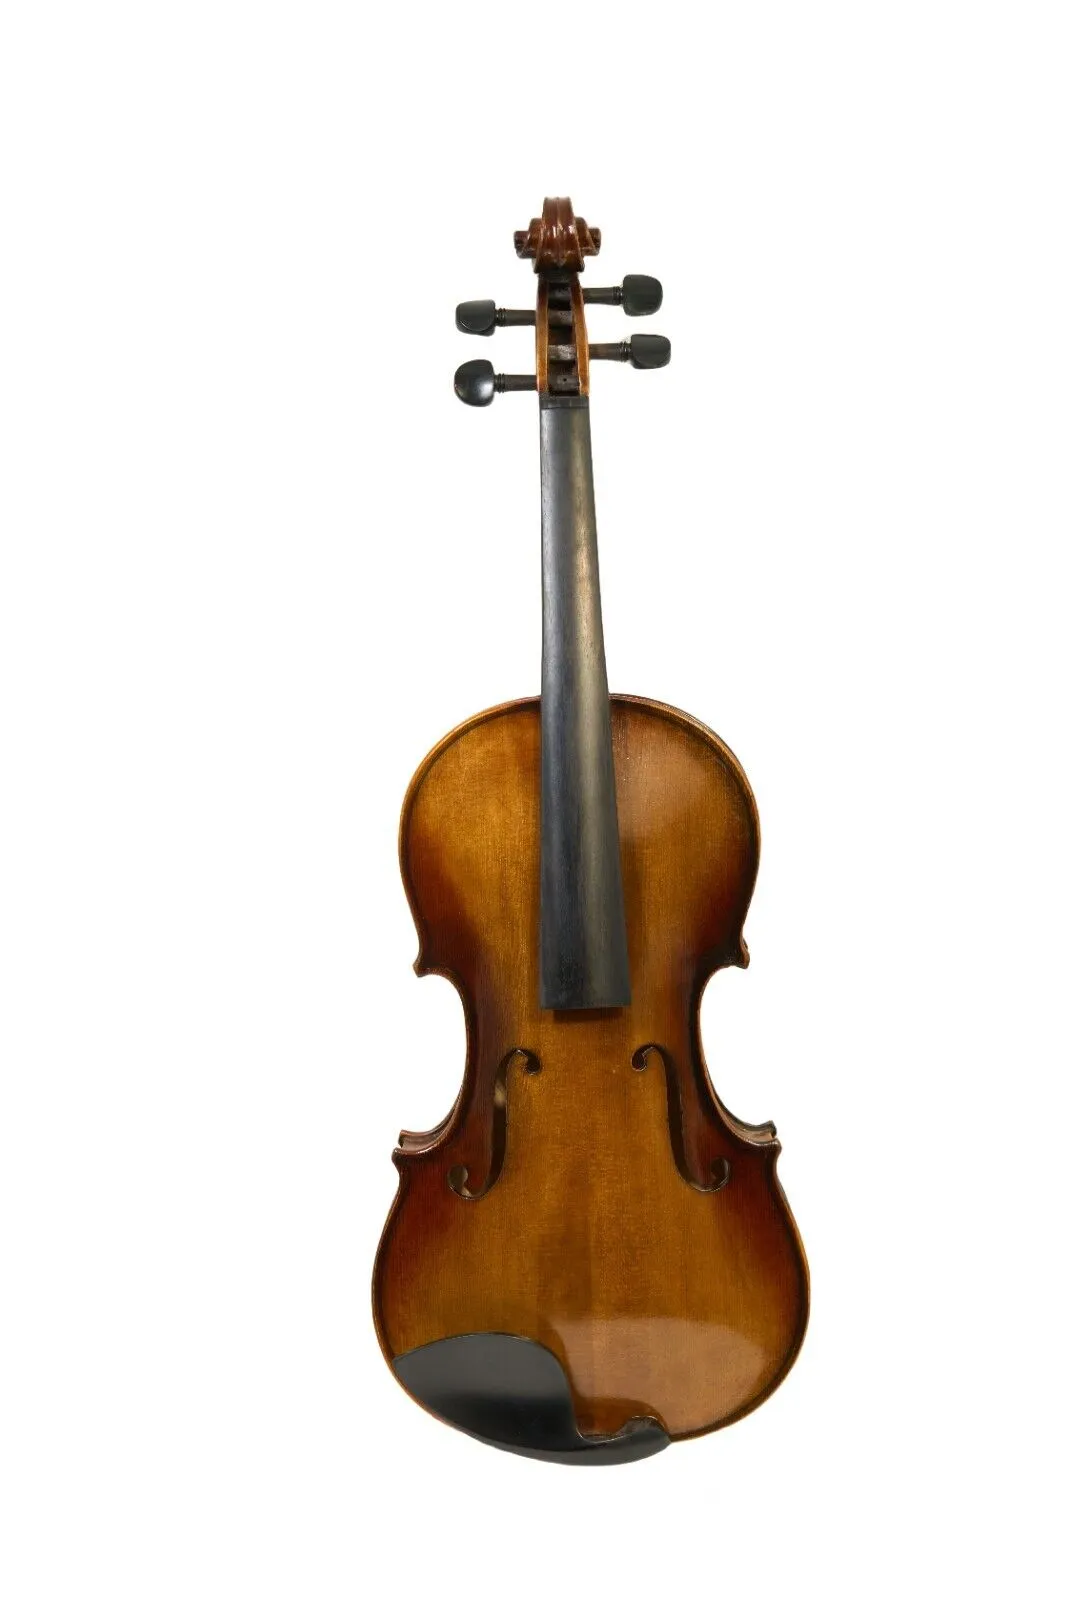 4/4 Violino esculpido 'Stradivari 1716' Rich Sound Spruce e Maple Wood com estojo